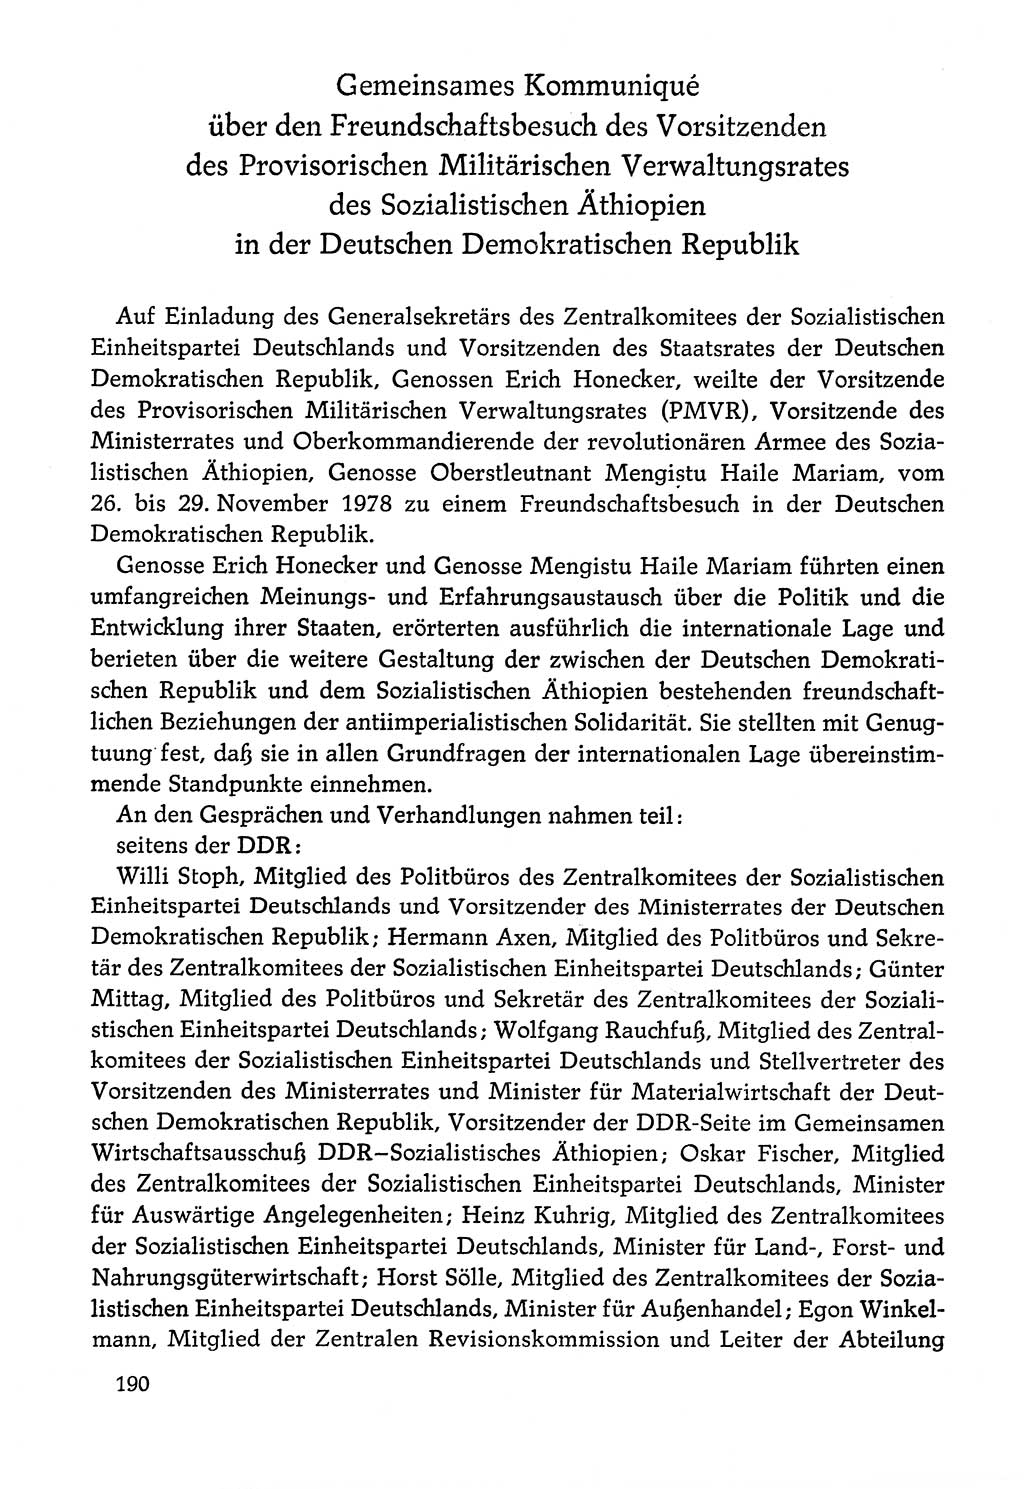 Dokumente der Sozialistischen Einheitspartei Deutschlands (SED) [Deutsche Demokratische Republik (DDR)] 1978-1979, Seite 190 (Dok. SED DDR 1978-1979, S. 190)